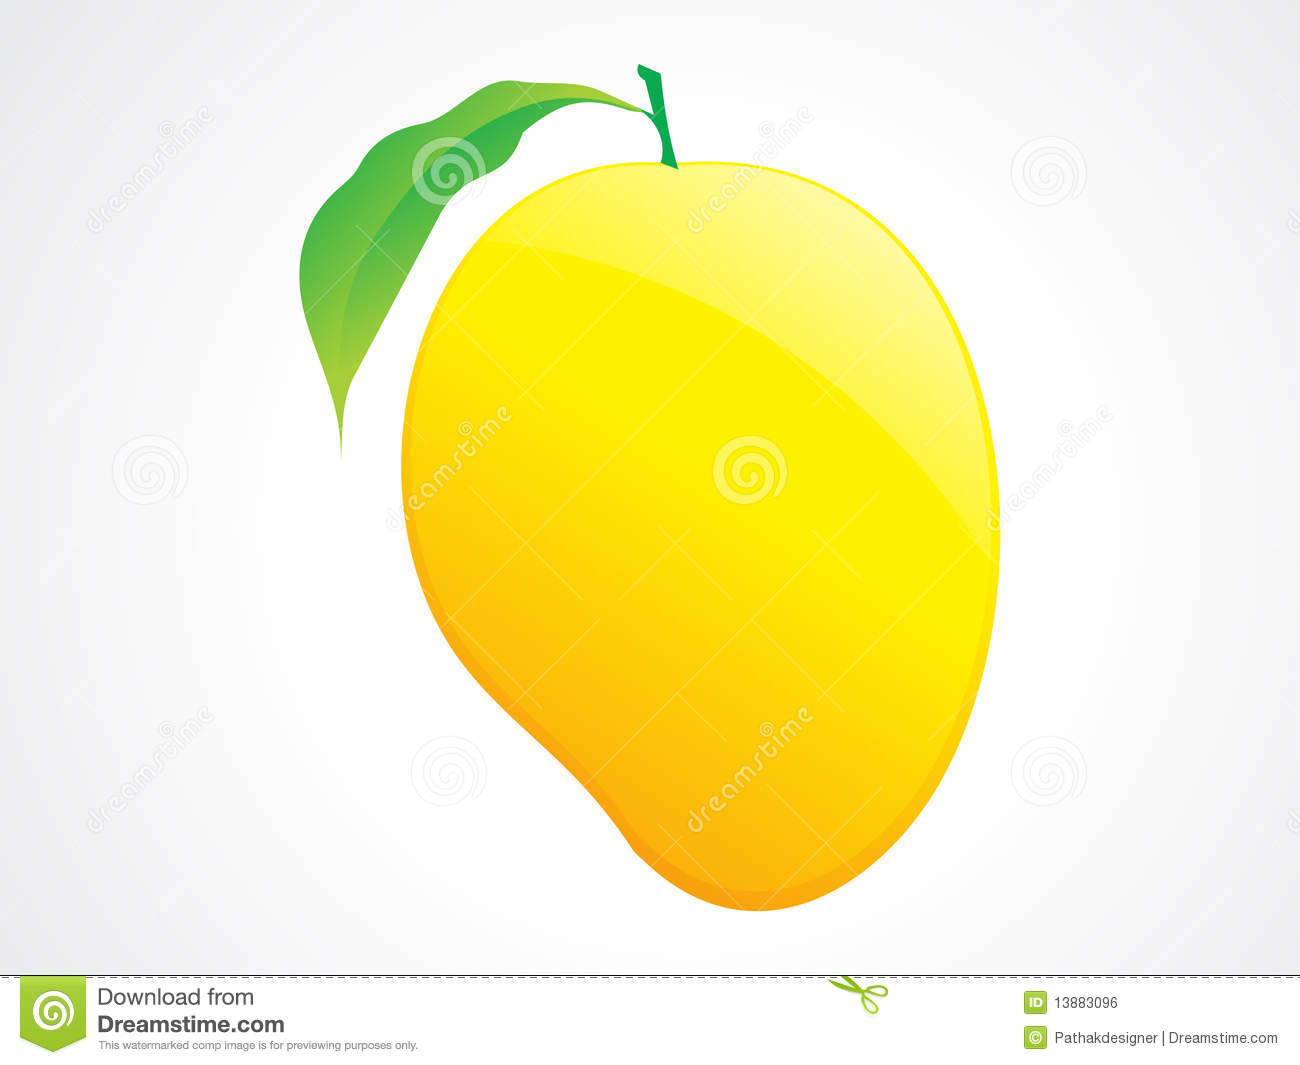 Ripe mango clipart.